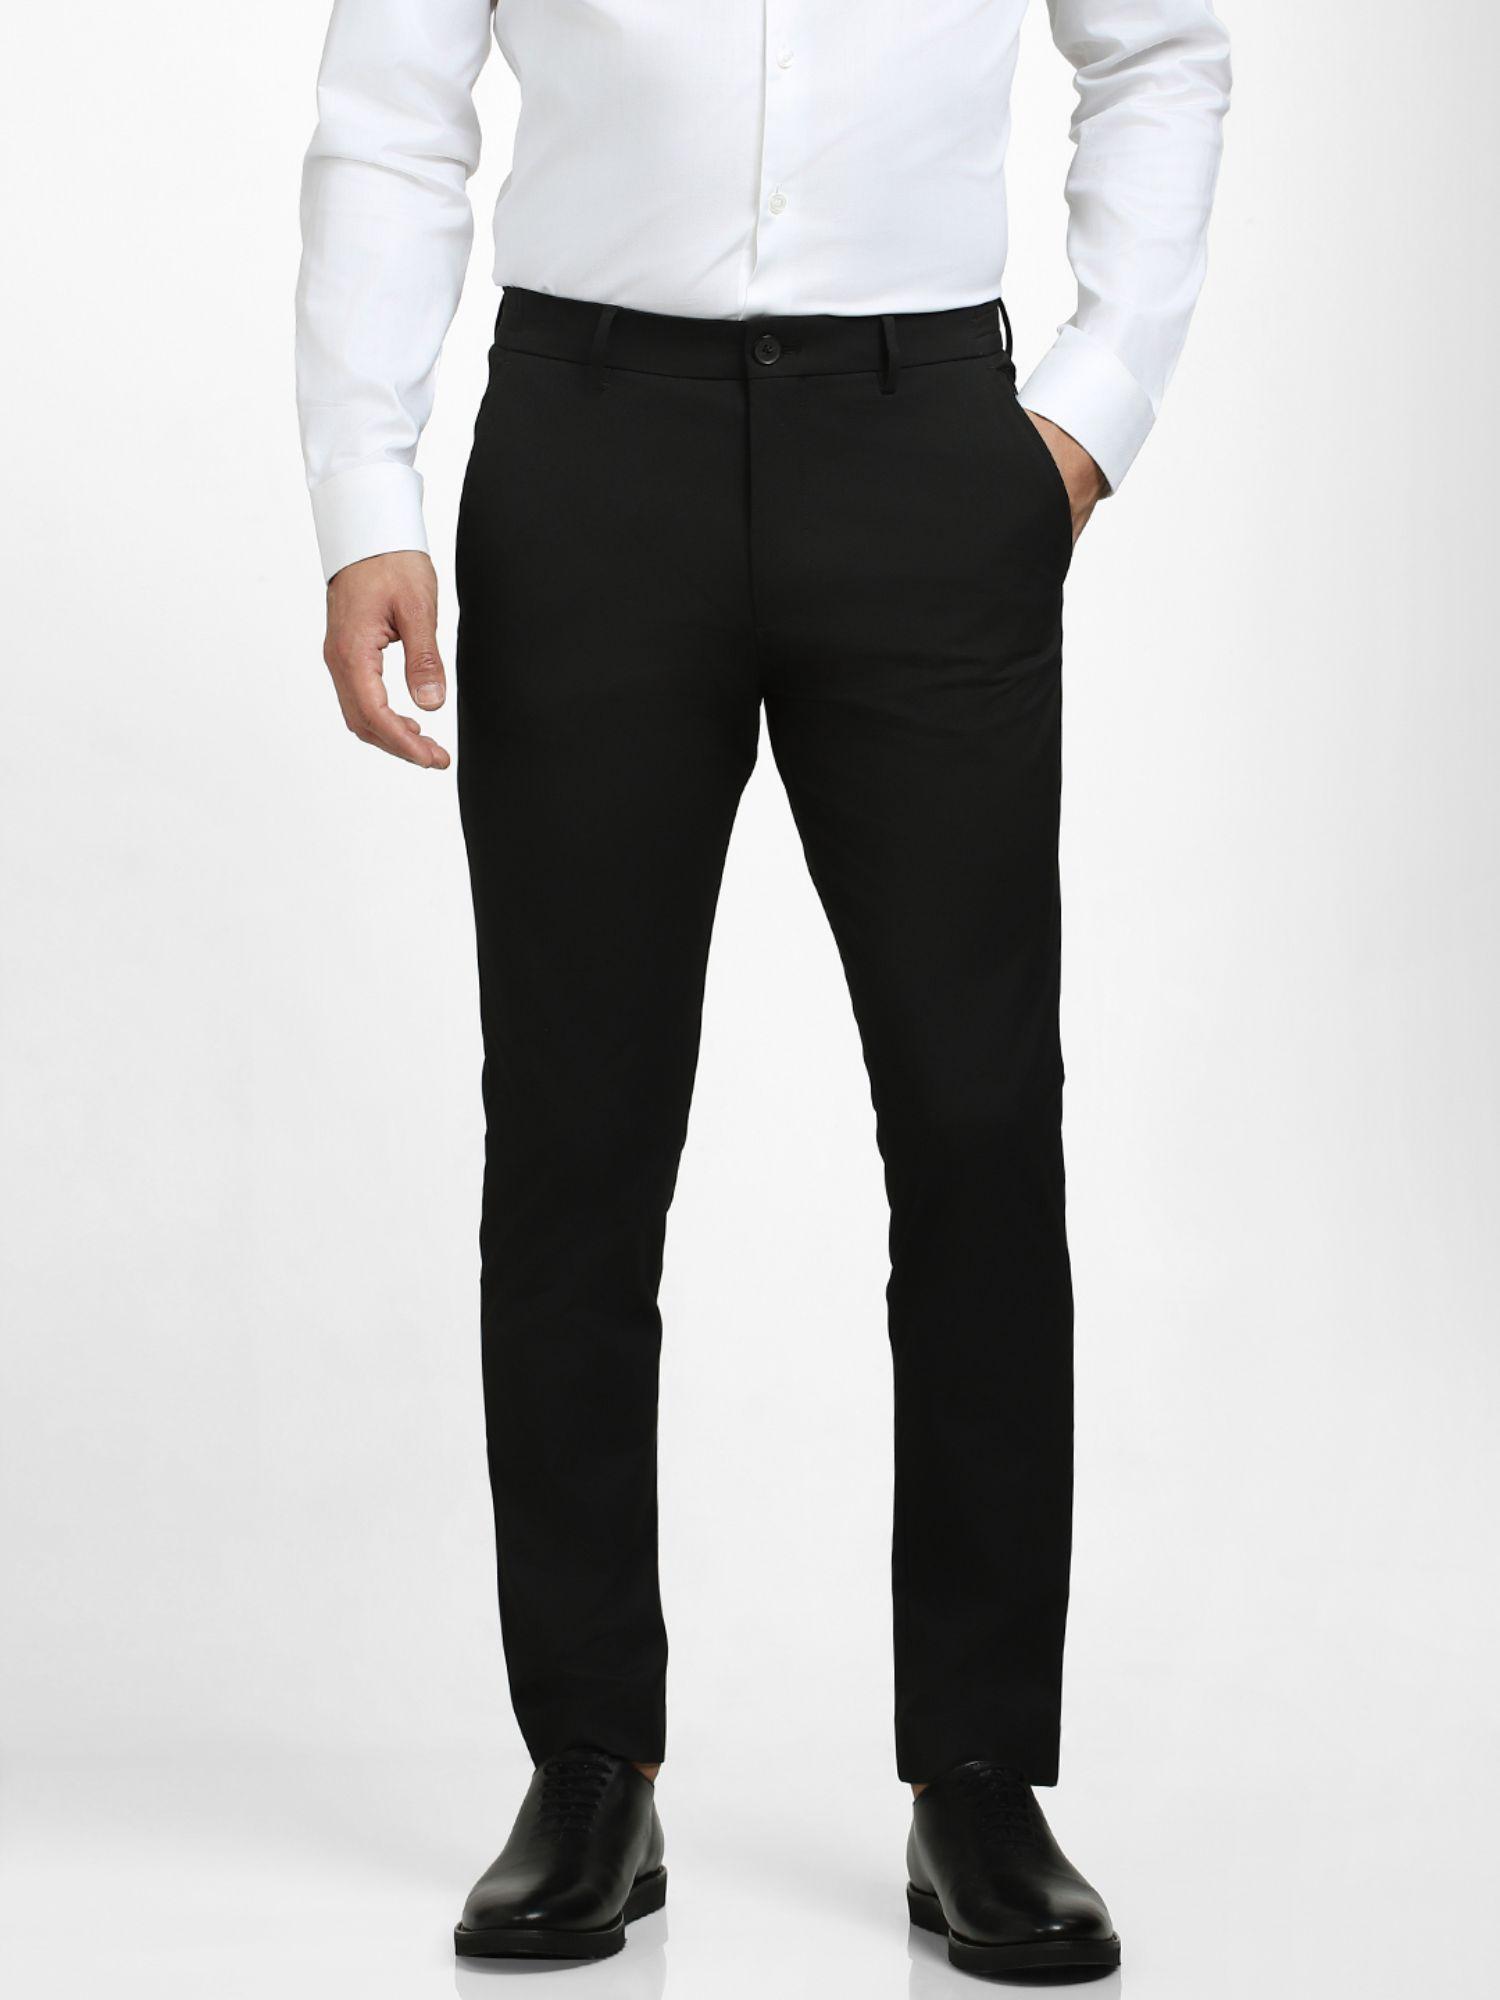 solid formal black trouser